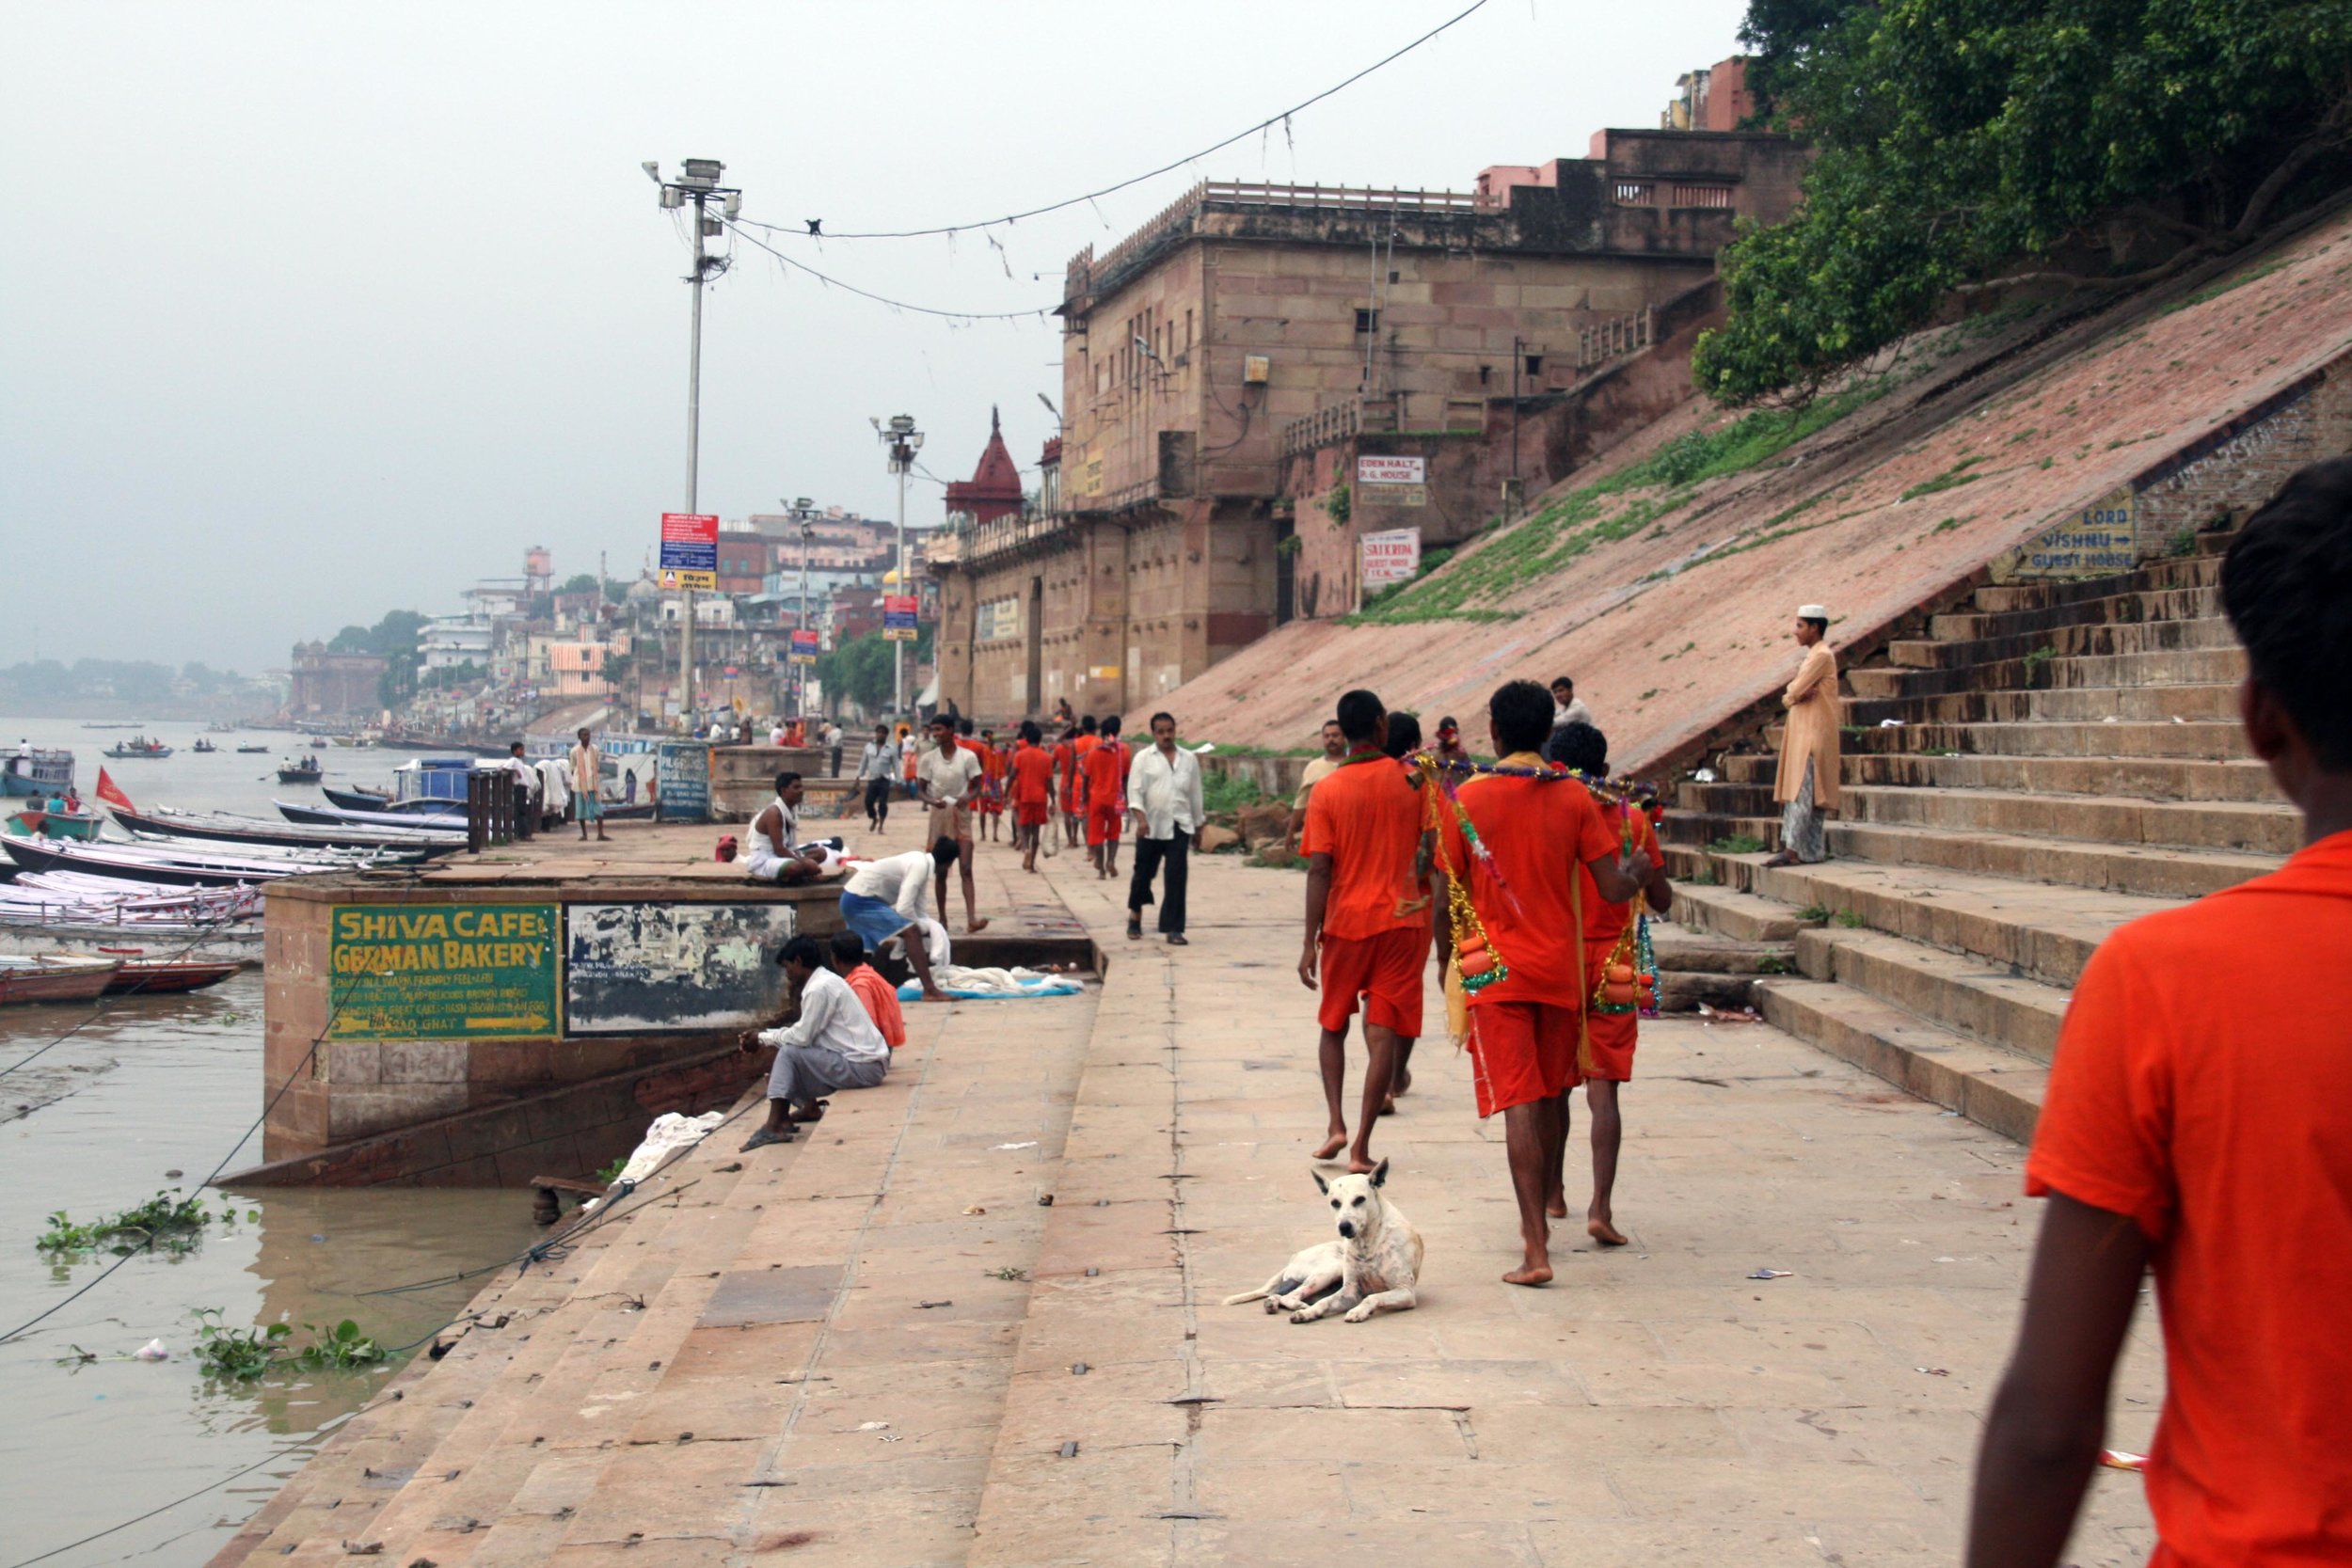 Ragazzi a Varanasi India 2010 425.jpg